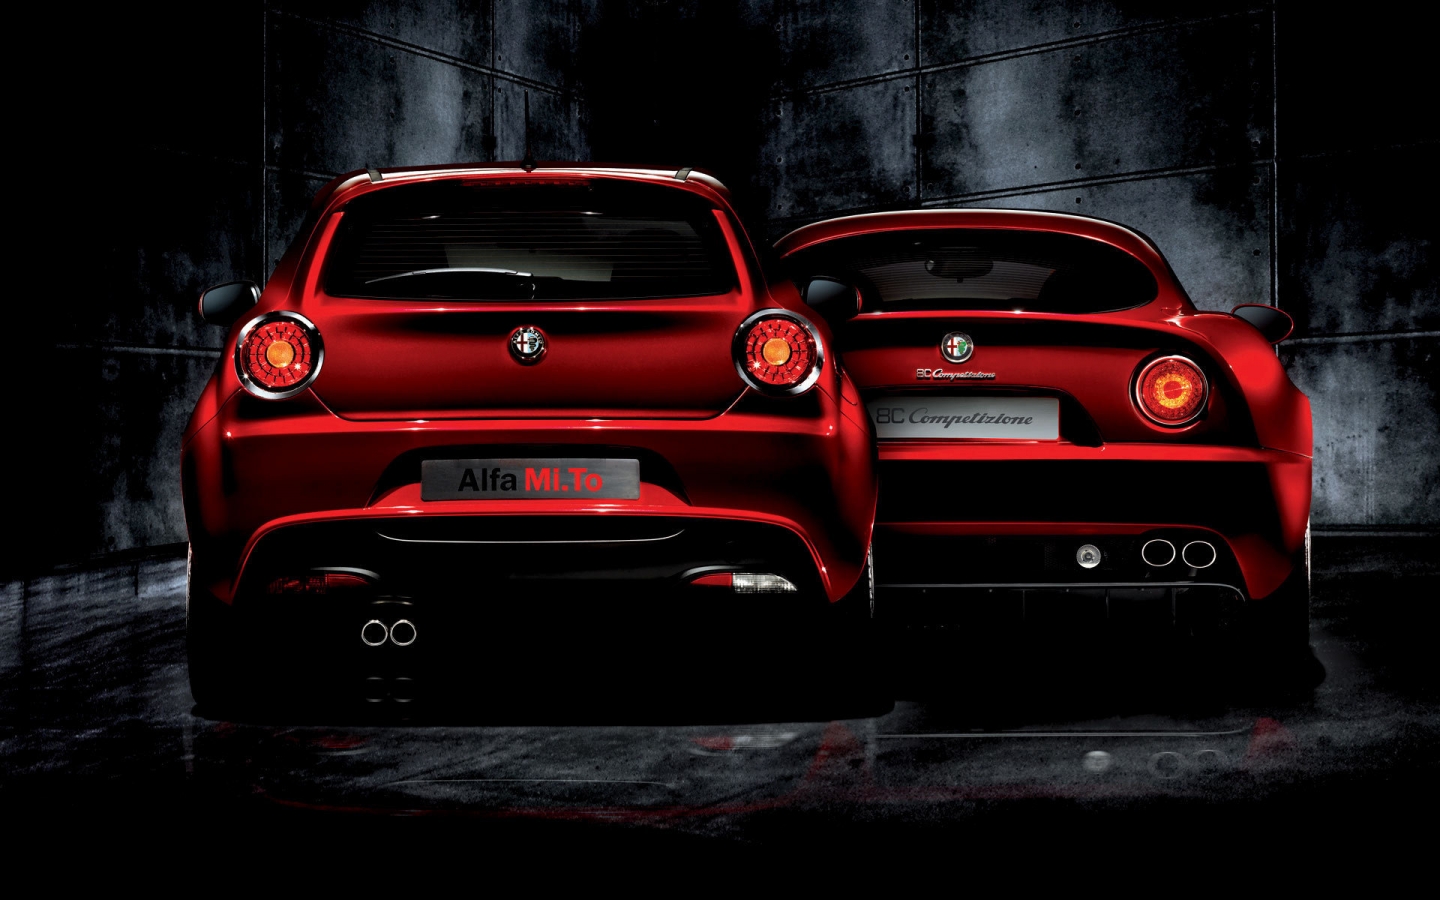 Alfa Romeo Mi To and 8C Competizione for 1440 x 900 widescreen resolution